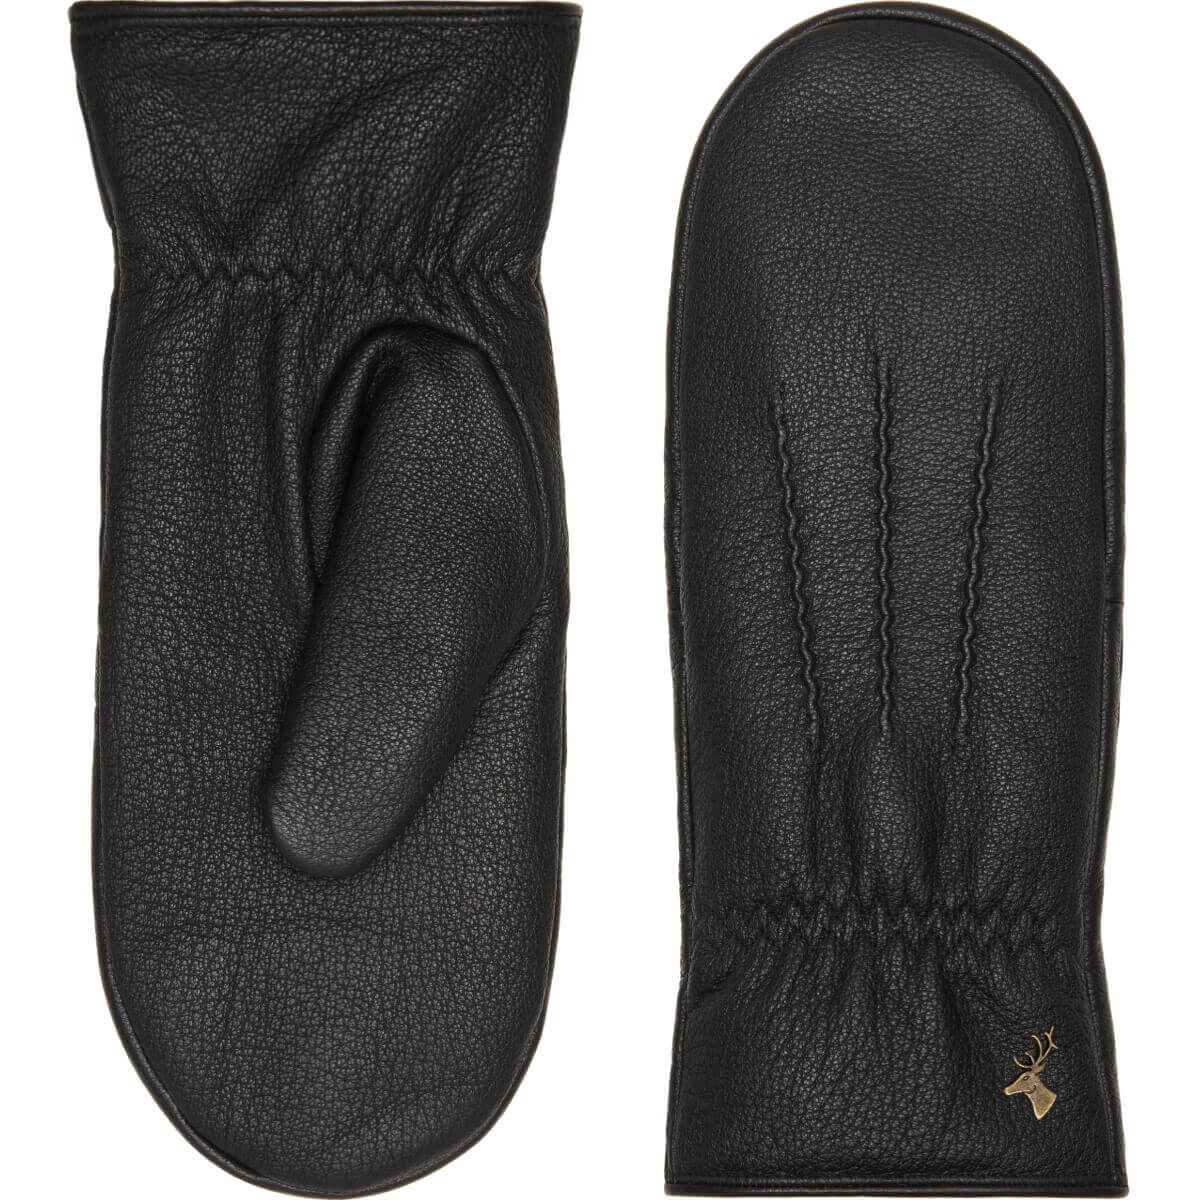 Leather Mittens Women Black Eva - Schwartz & von Halen® - Premium Leather Gloves - 2